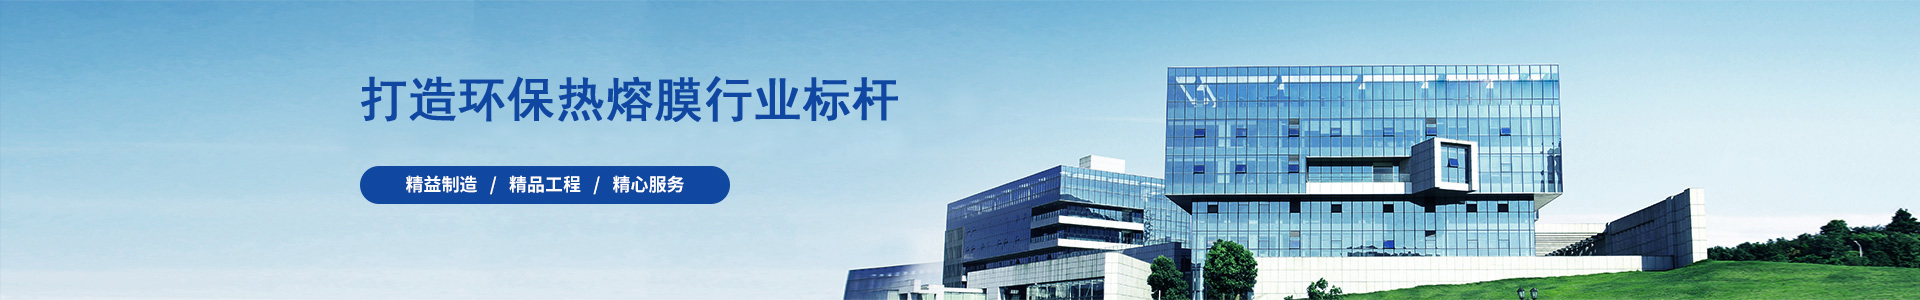 热熔胶行业新技术-行业新闻-苏州延亚新材料科技有限公司